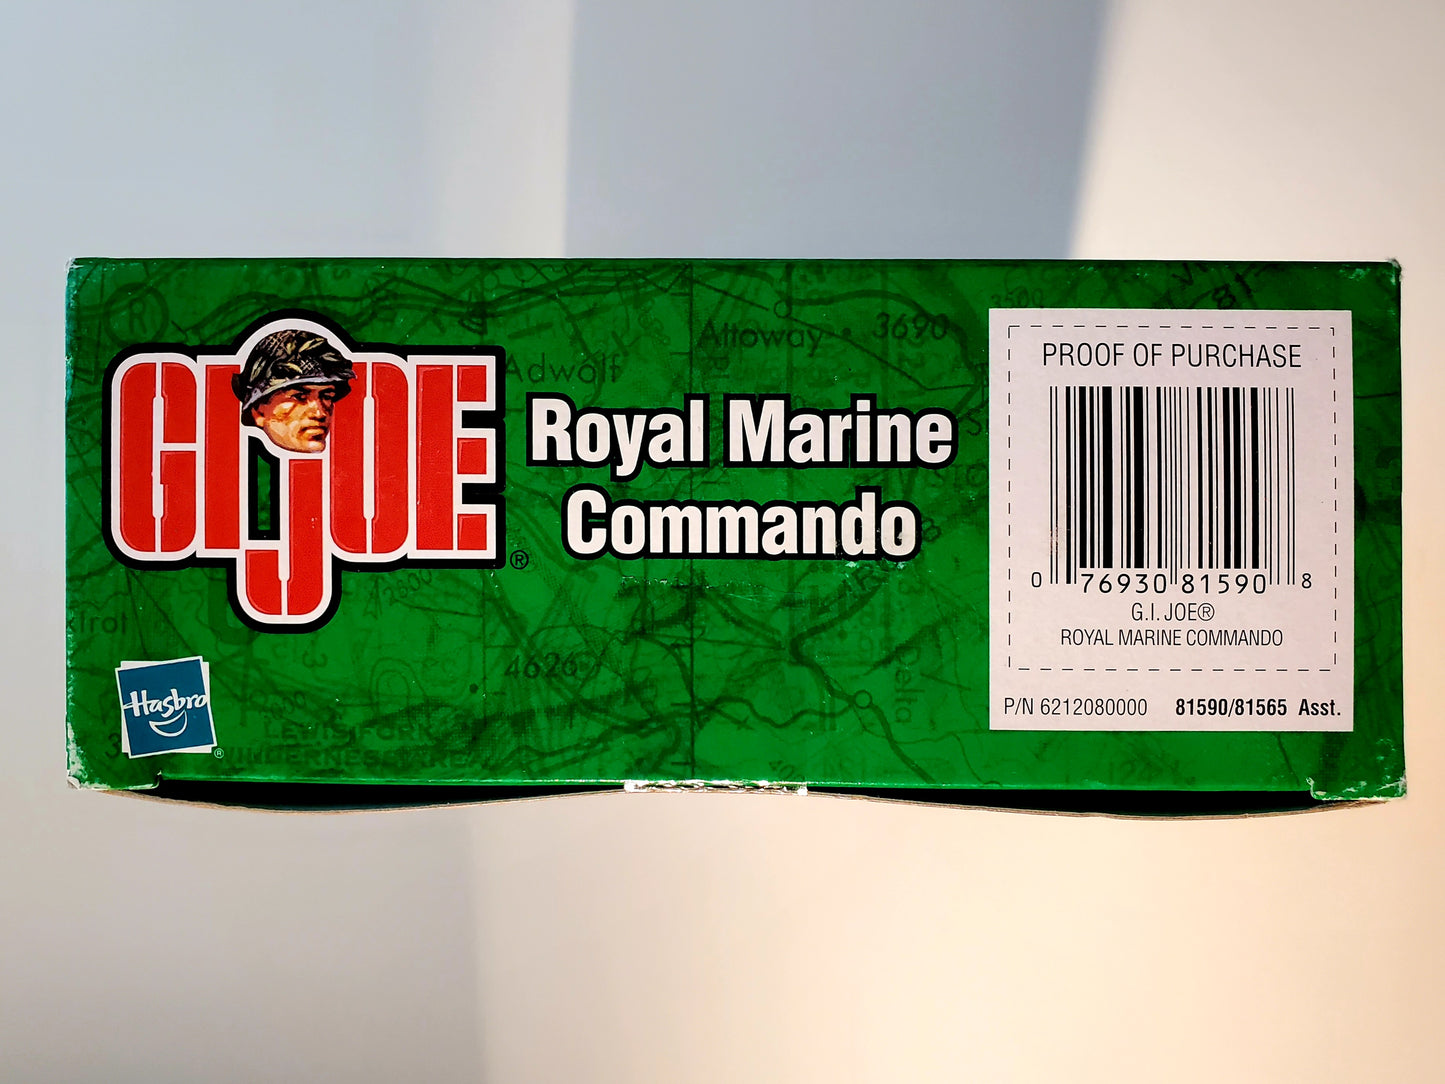 G.I. Joe Royal Marine Commando (2002)